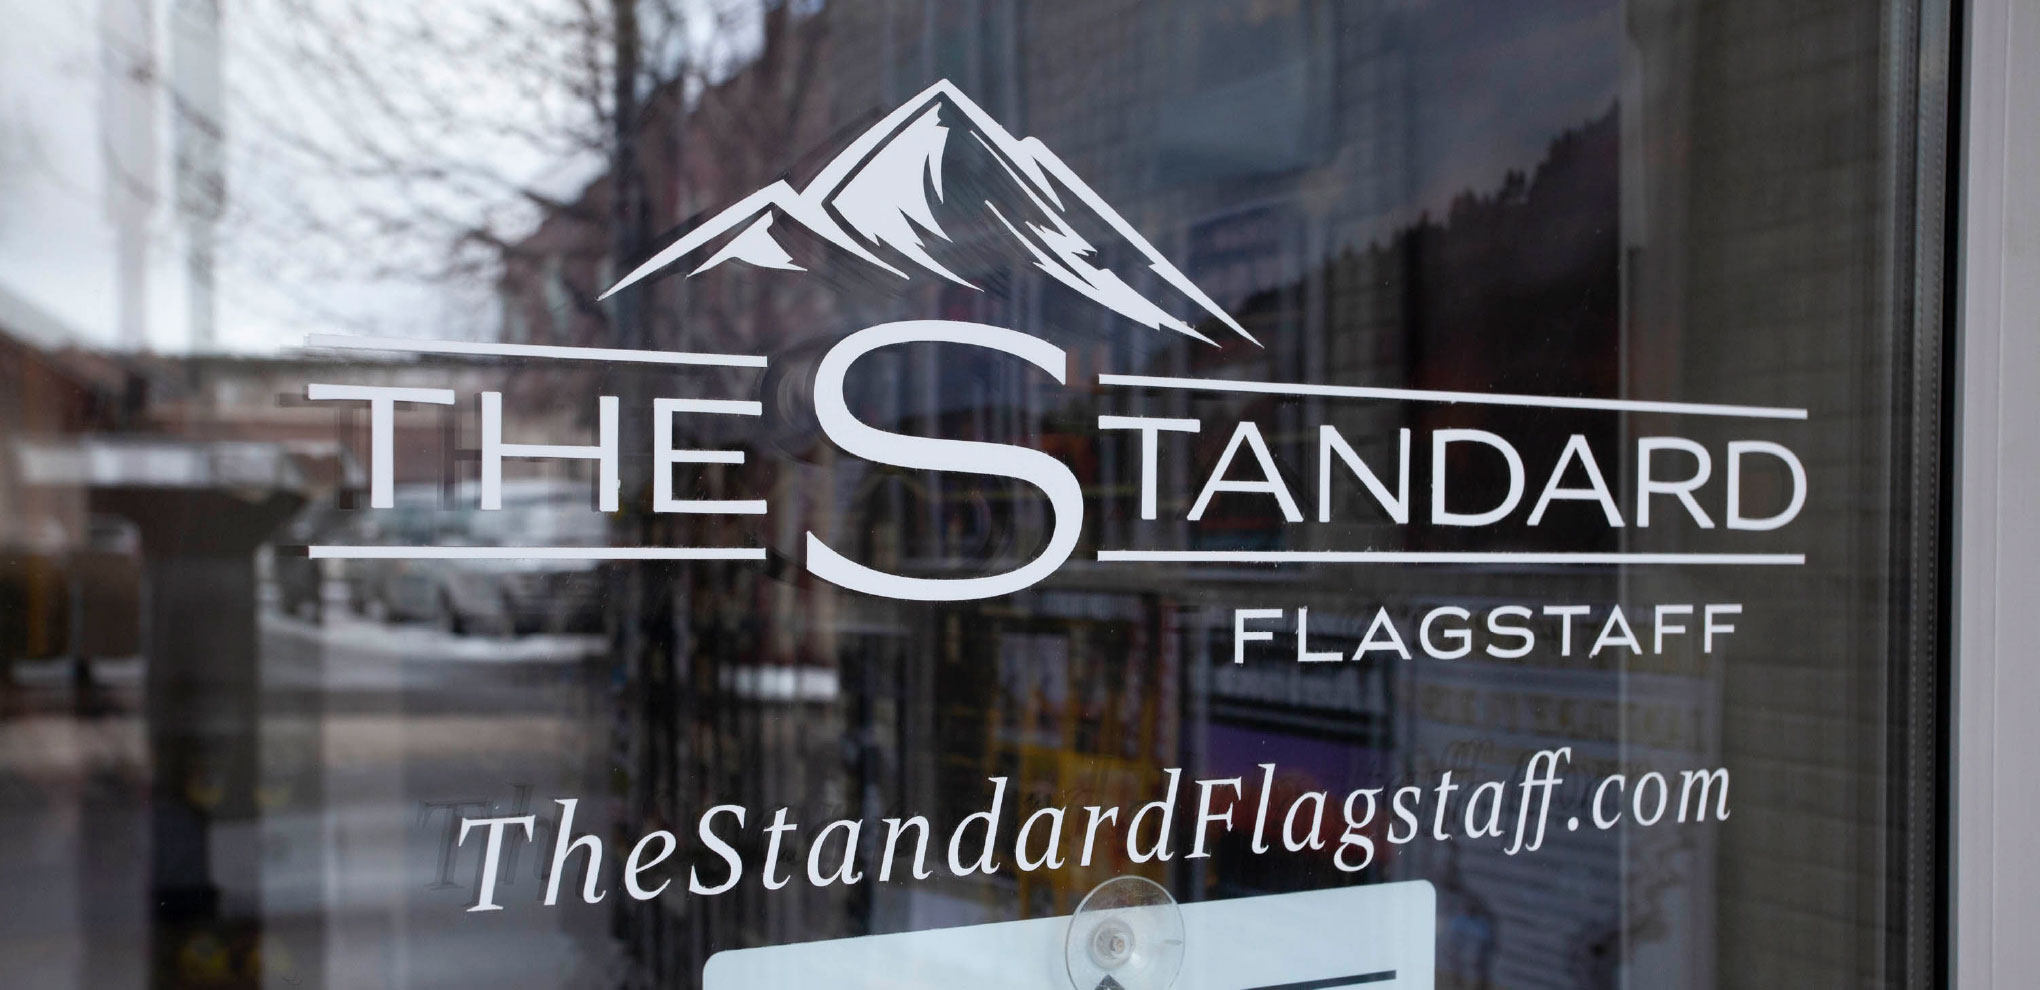 The Standard Flagstaff